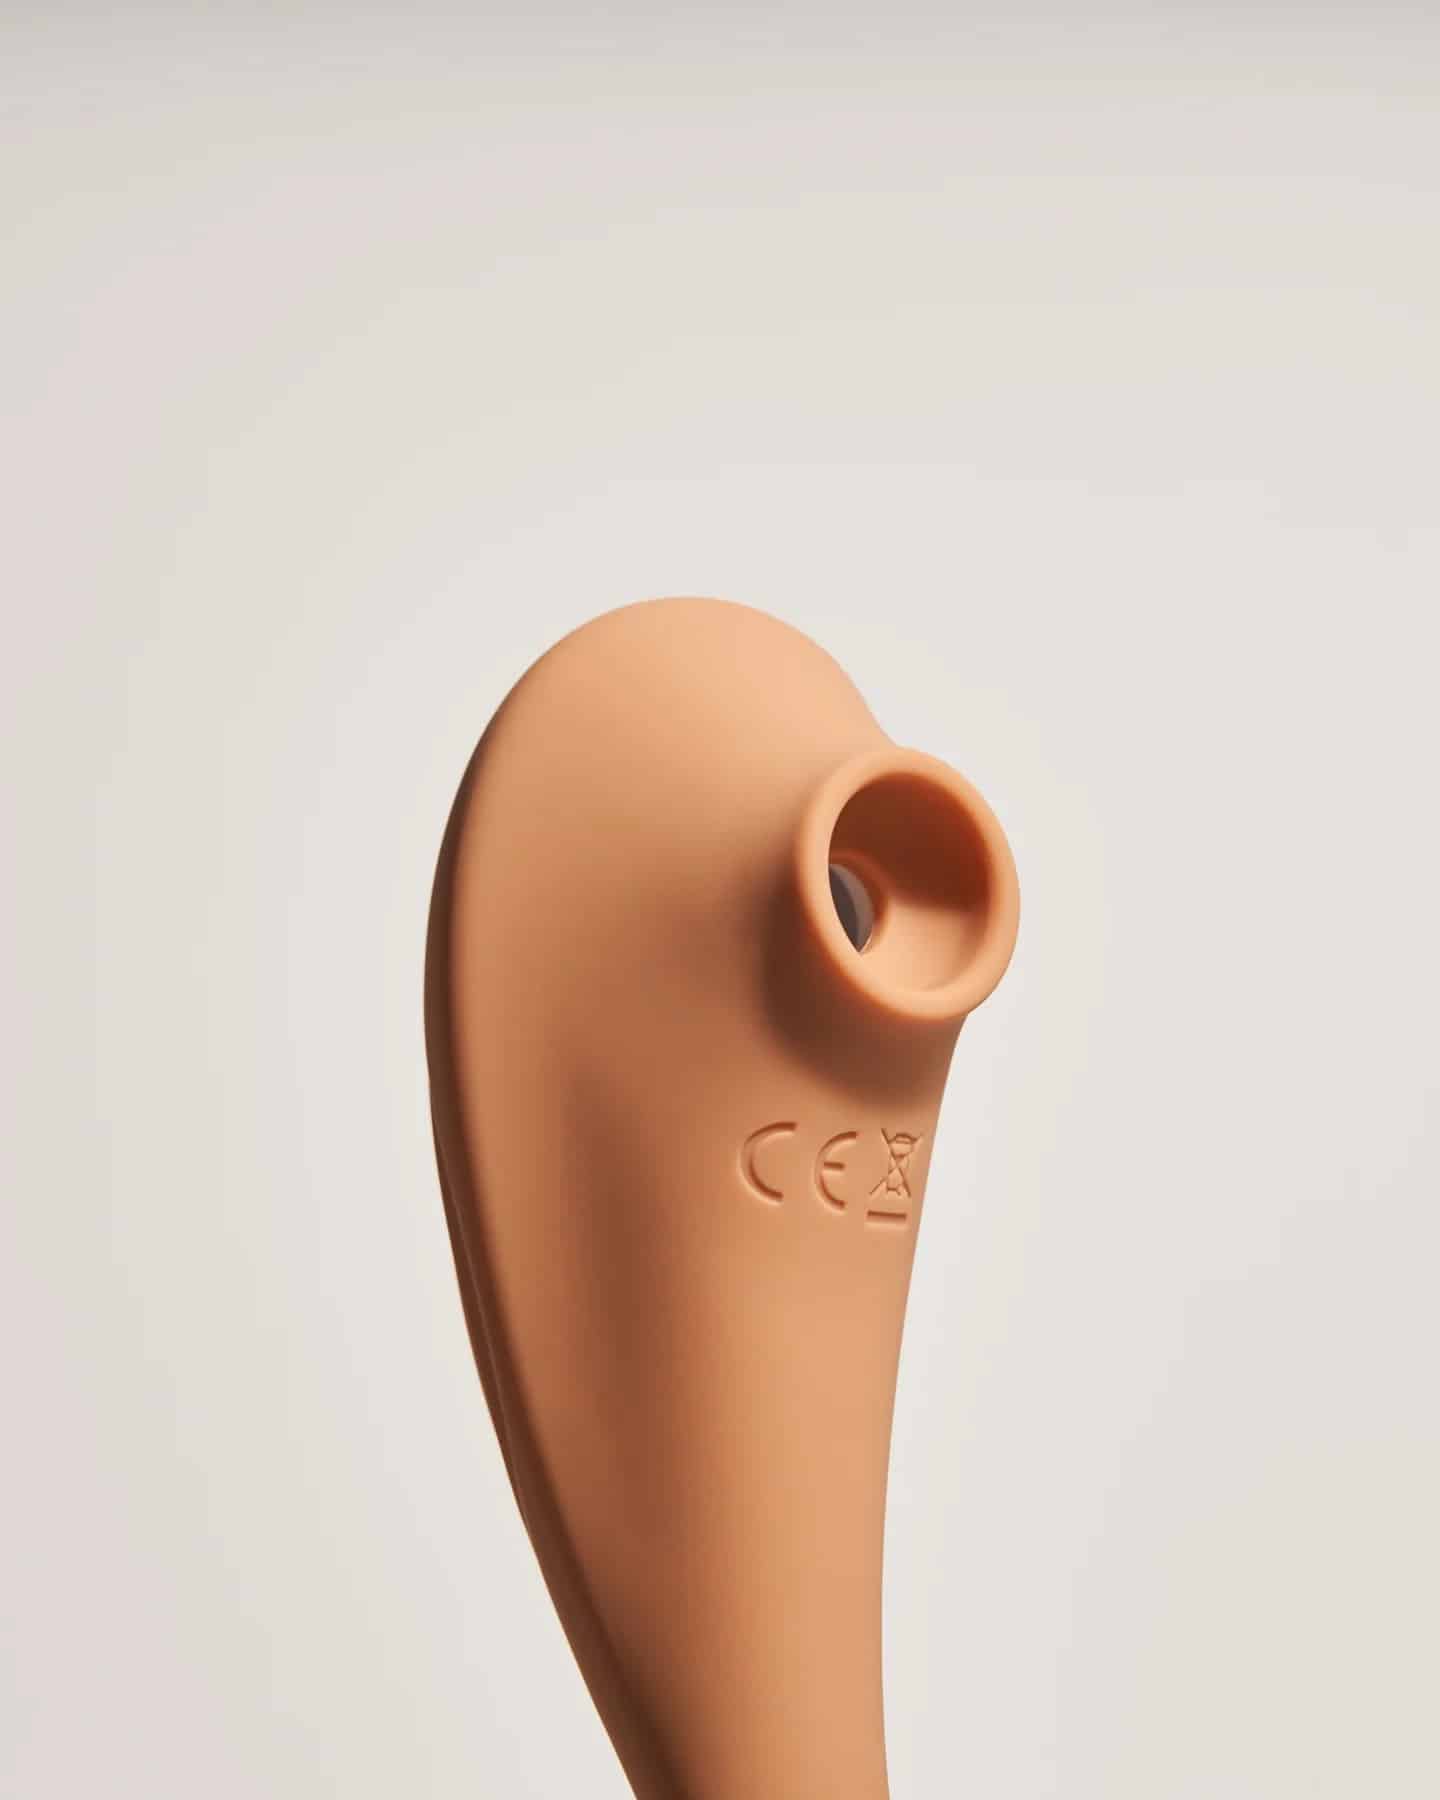 Succionador-clitoris-dildo-vulva-meibi_1440x1800